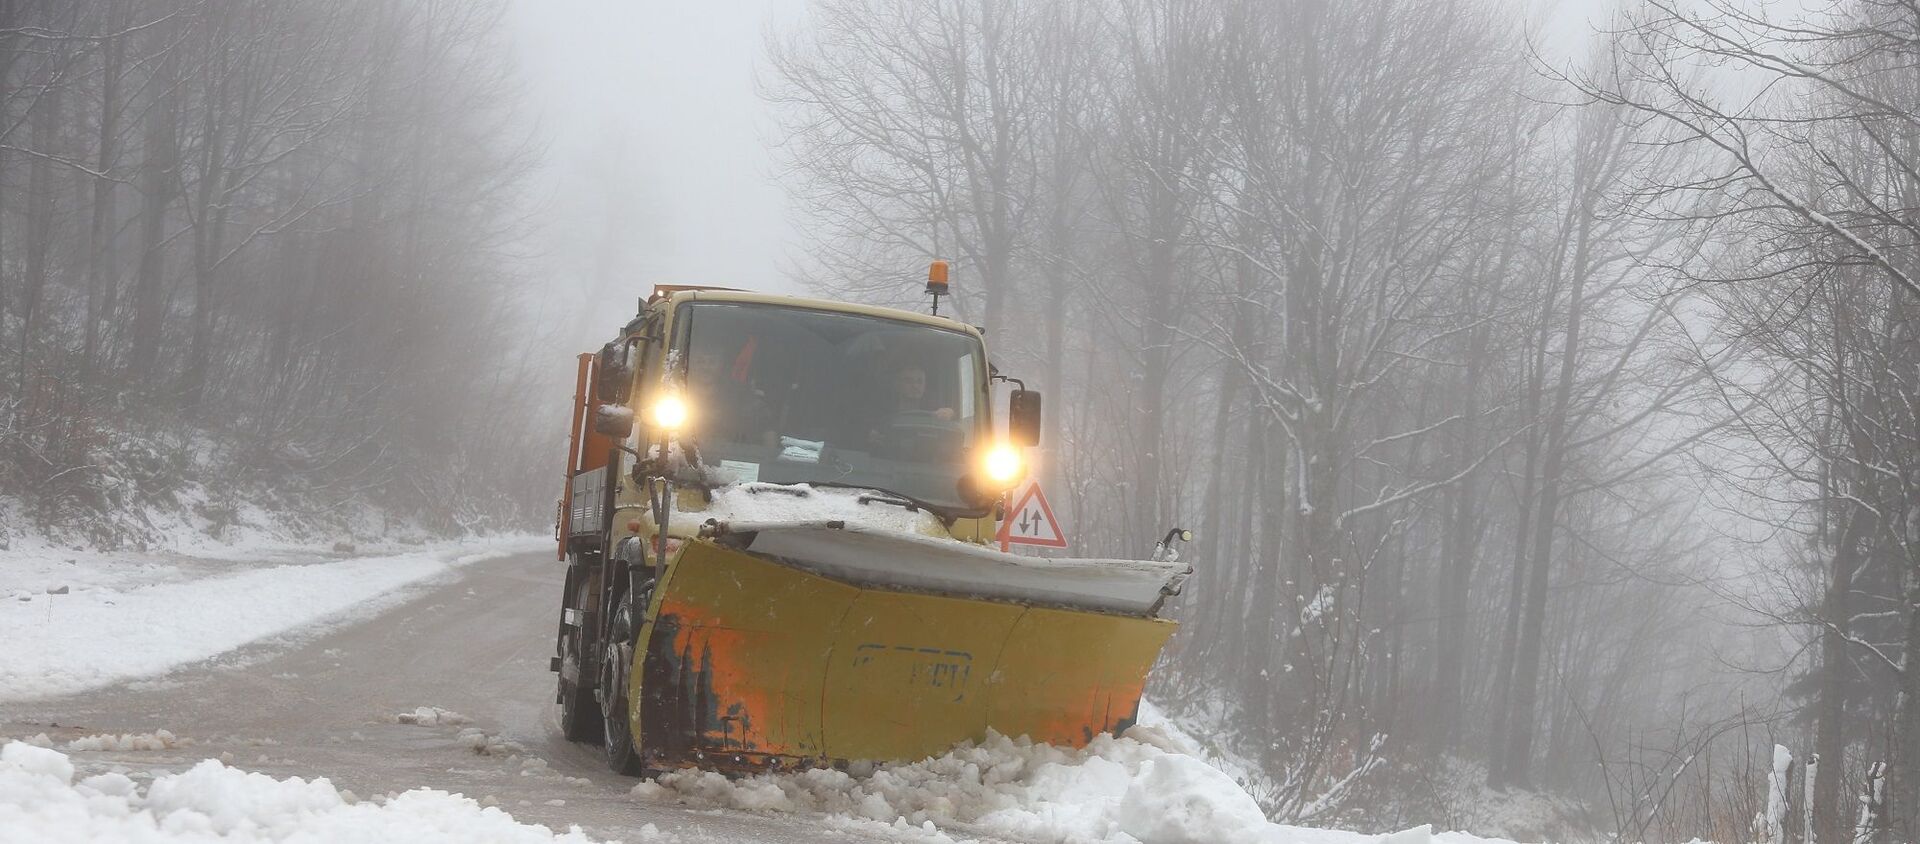 Kocaeli Büyükşehir Belediyesi ekipleri ise kar yağışının yaşandığı yolların açık tutulması için tuzlama ve yol açma çalışmaları yapıyor. - Sputnik Türkiye, 1920, 12.03.2021